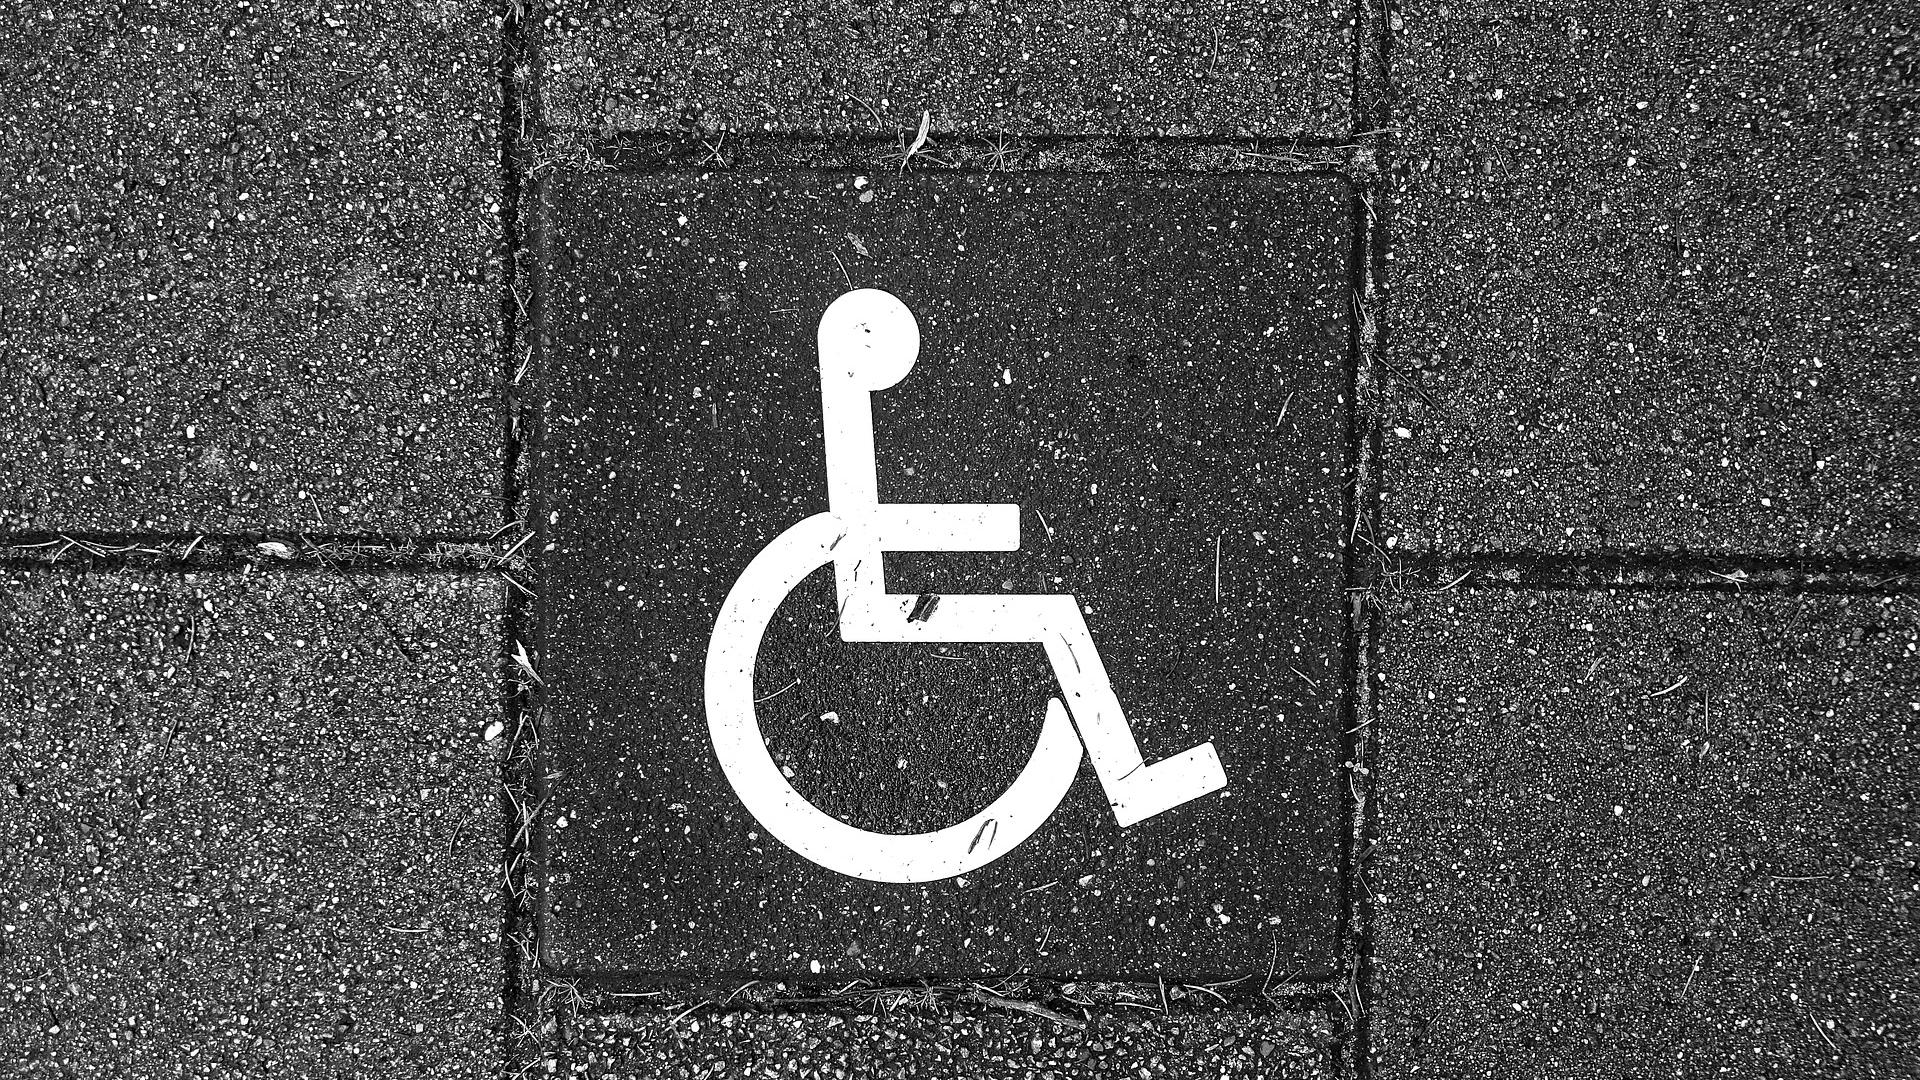 Stimmungsbild zum Beitrag: Es wird ein Rollstuhl-Symbol auf einem Gehwegpflaster abgebildet.